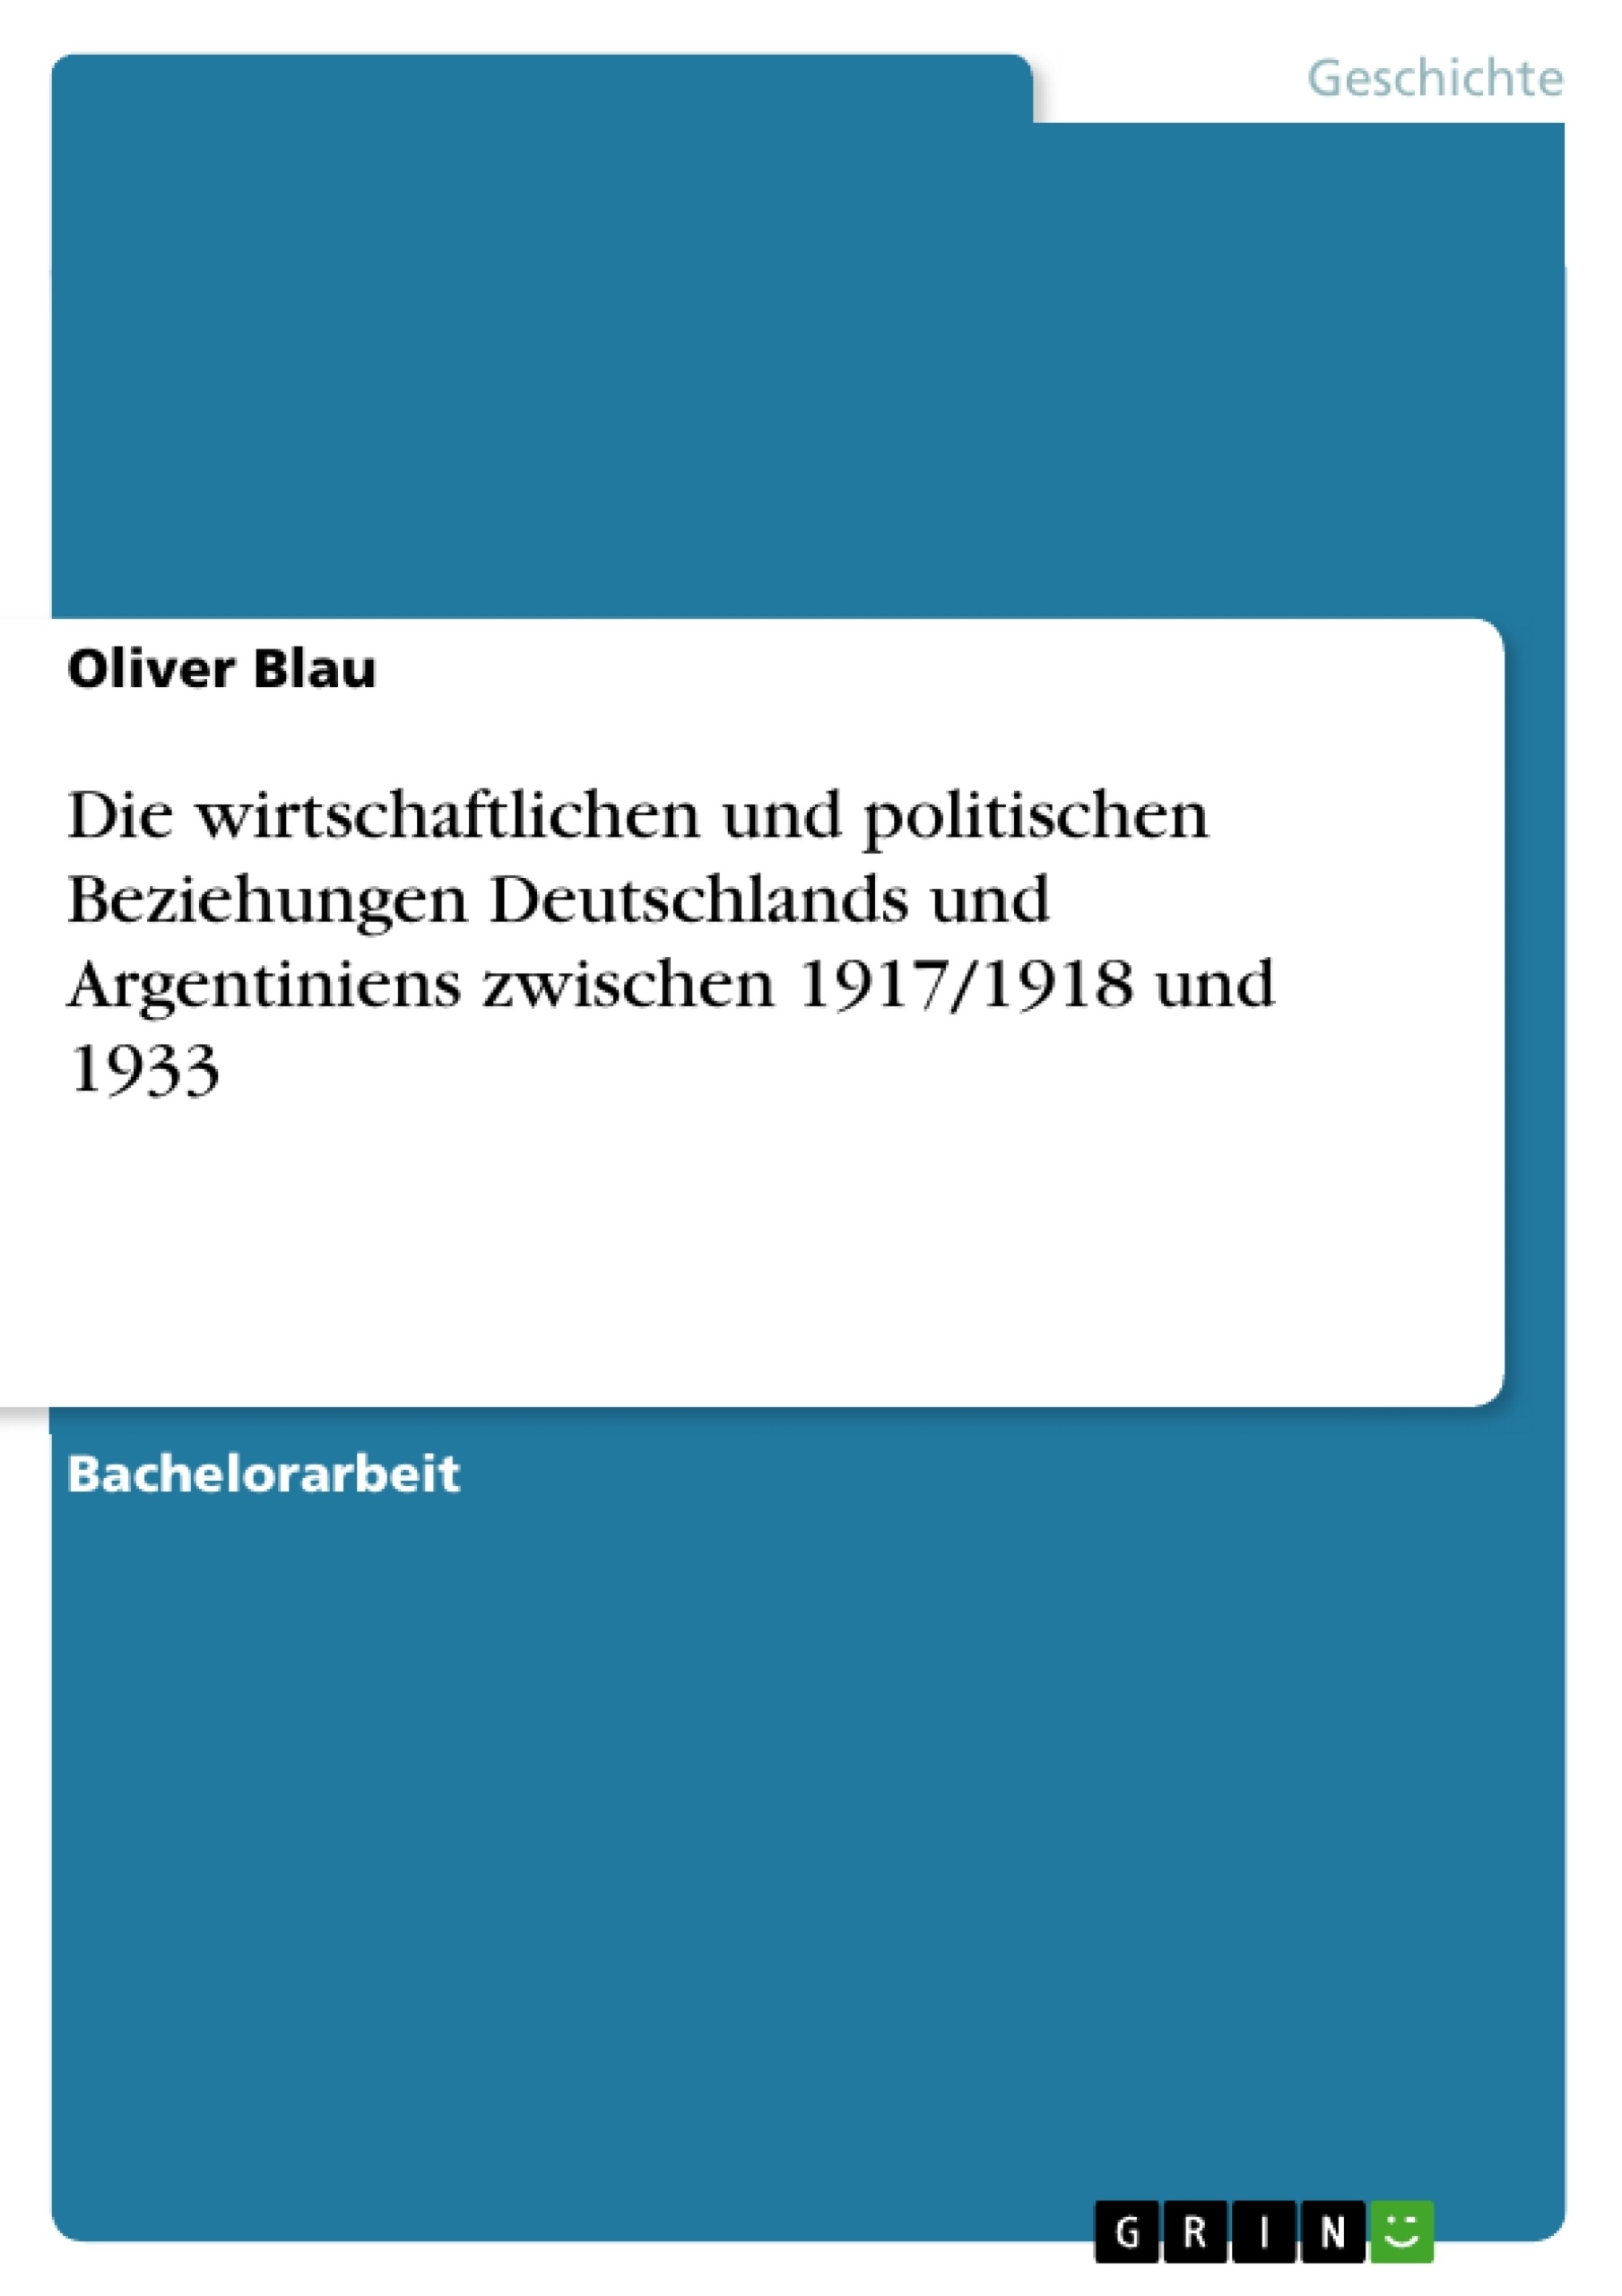 Title: Die wirtschaftlichen und politischen Beziehungen Deutschlands und Argentiniens zwischen 1917/1918 und 1933